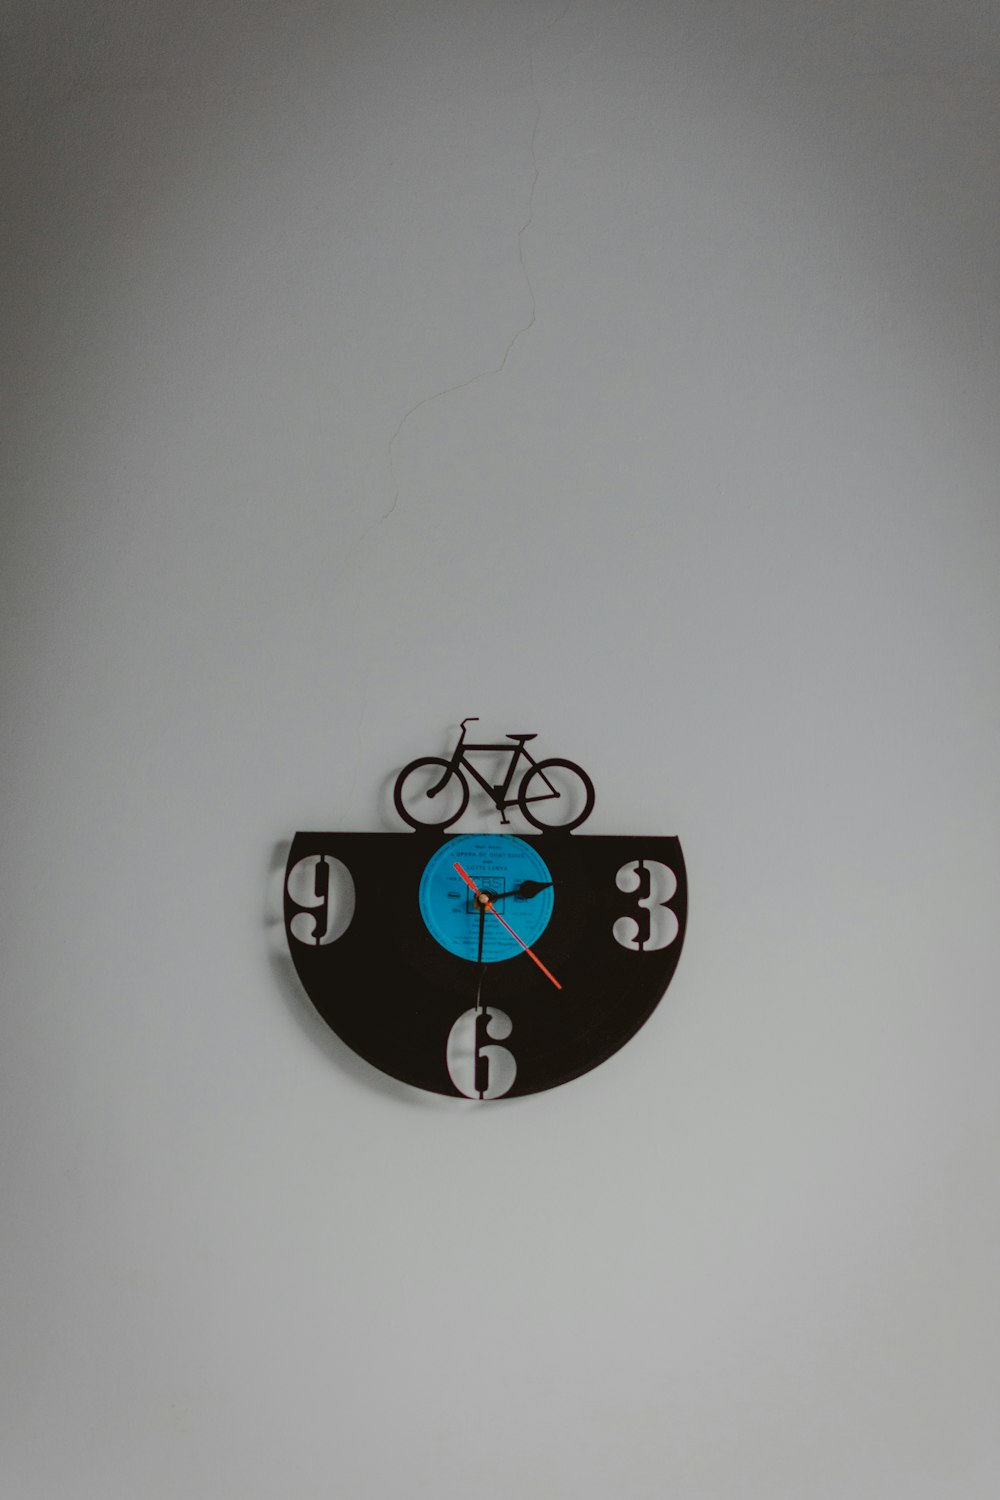 Horloge murale analogique sur le thème du vélo noir et bleu affichant l’heure 3 :30